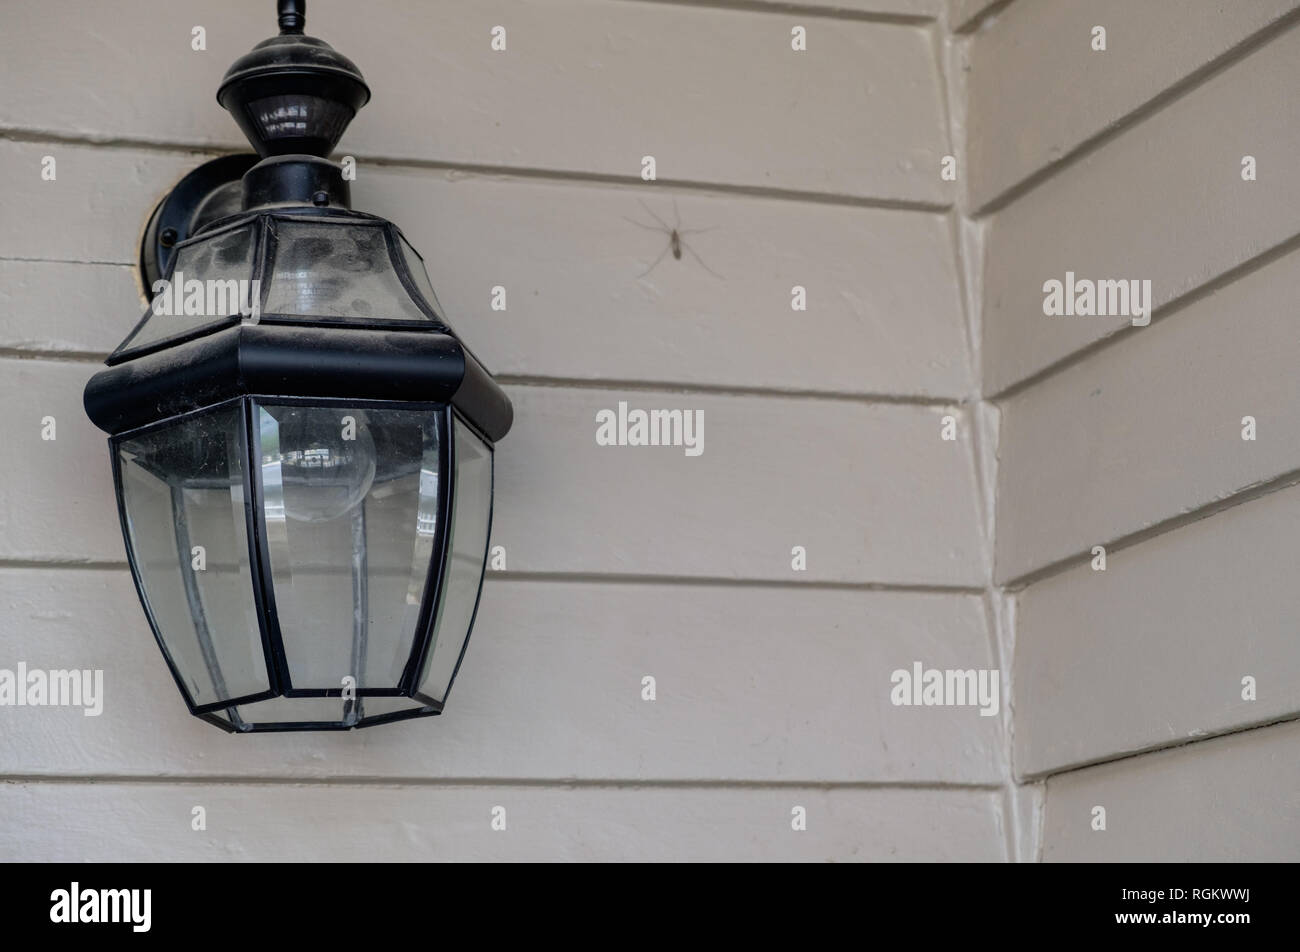 Puerta de hierro negro Vintage lámpara colgante con cristal adjunta al edificio shingled gris. Foto de stock